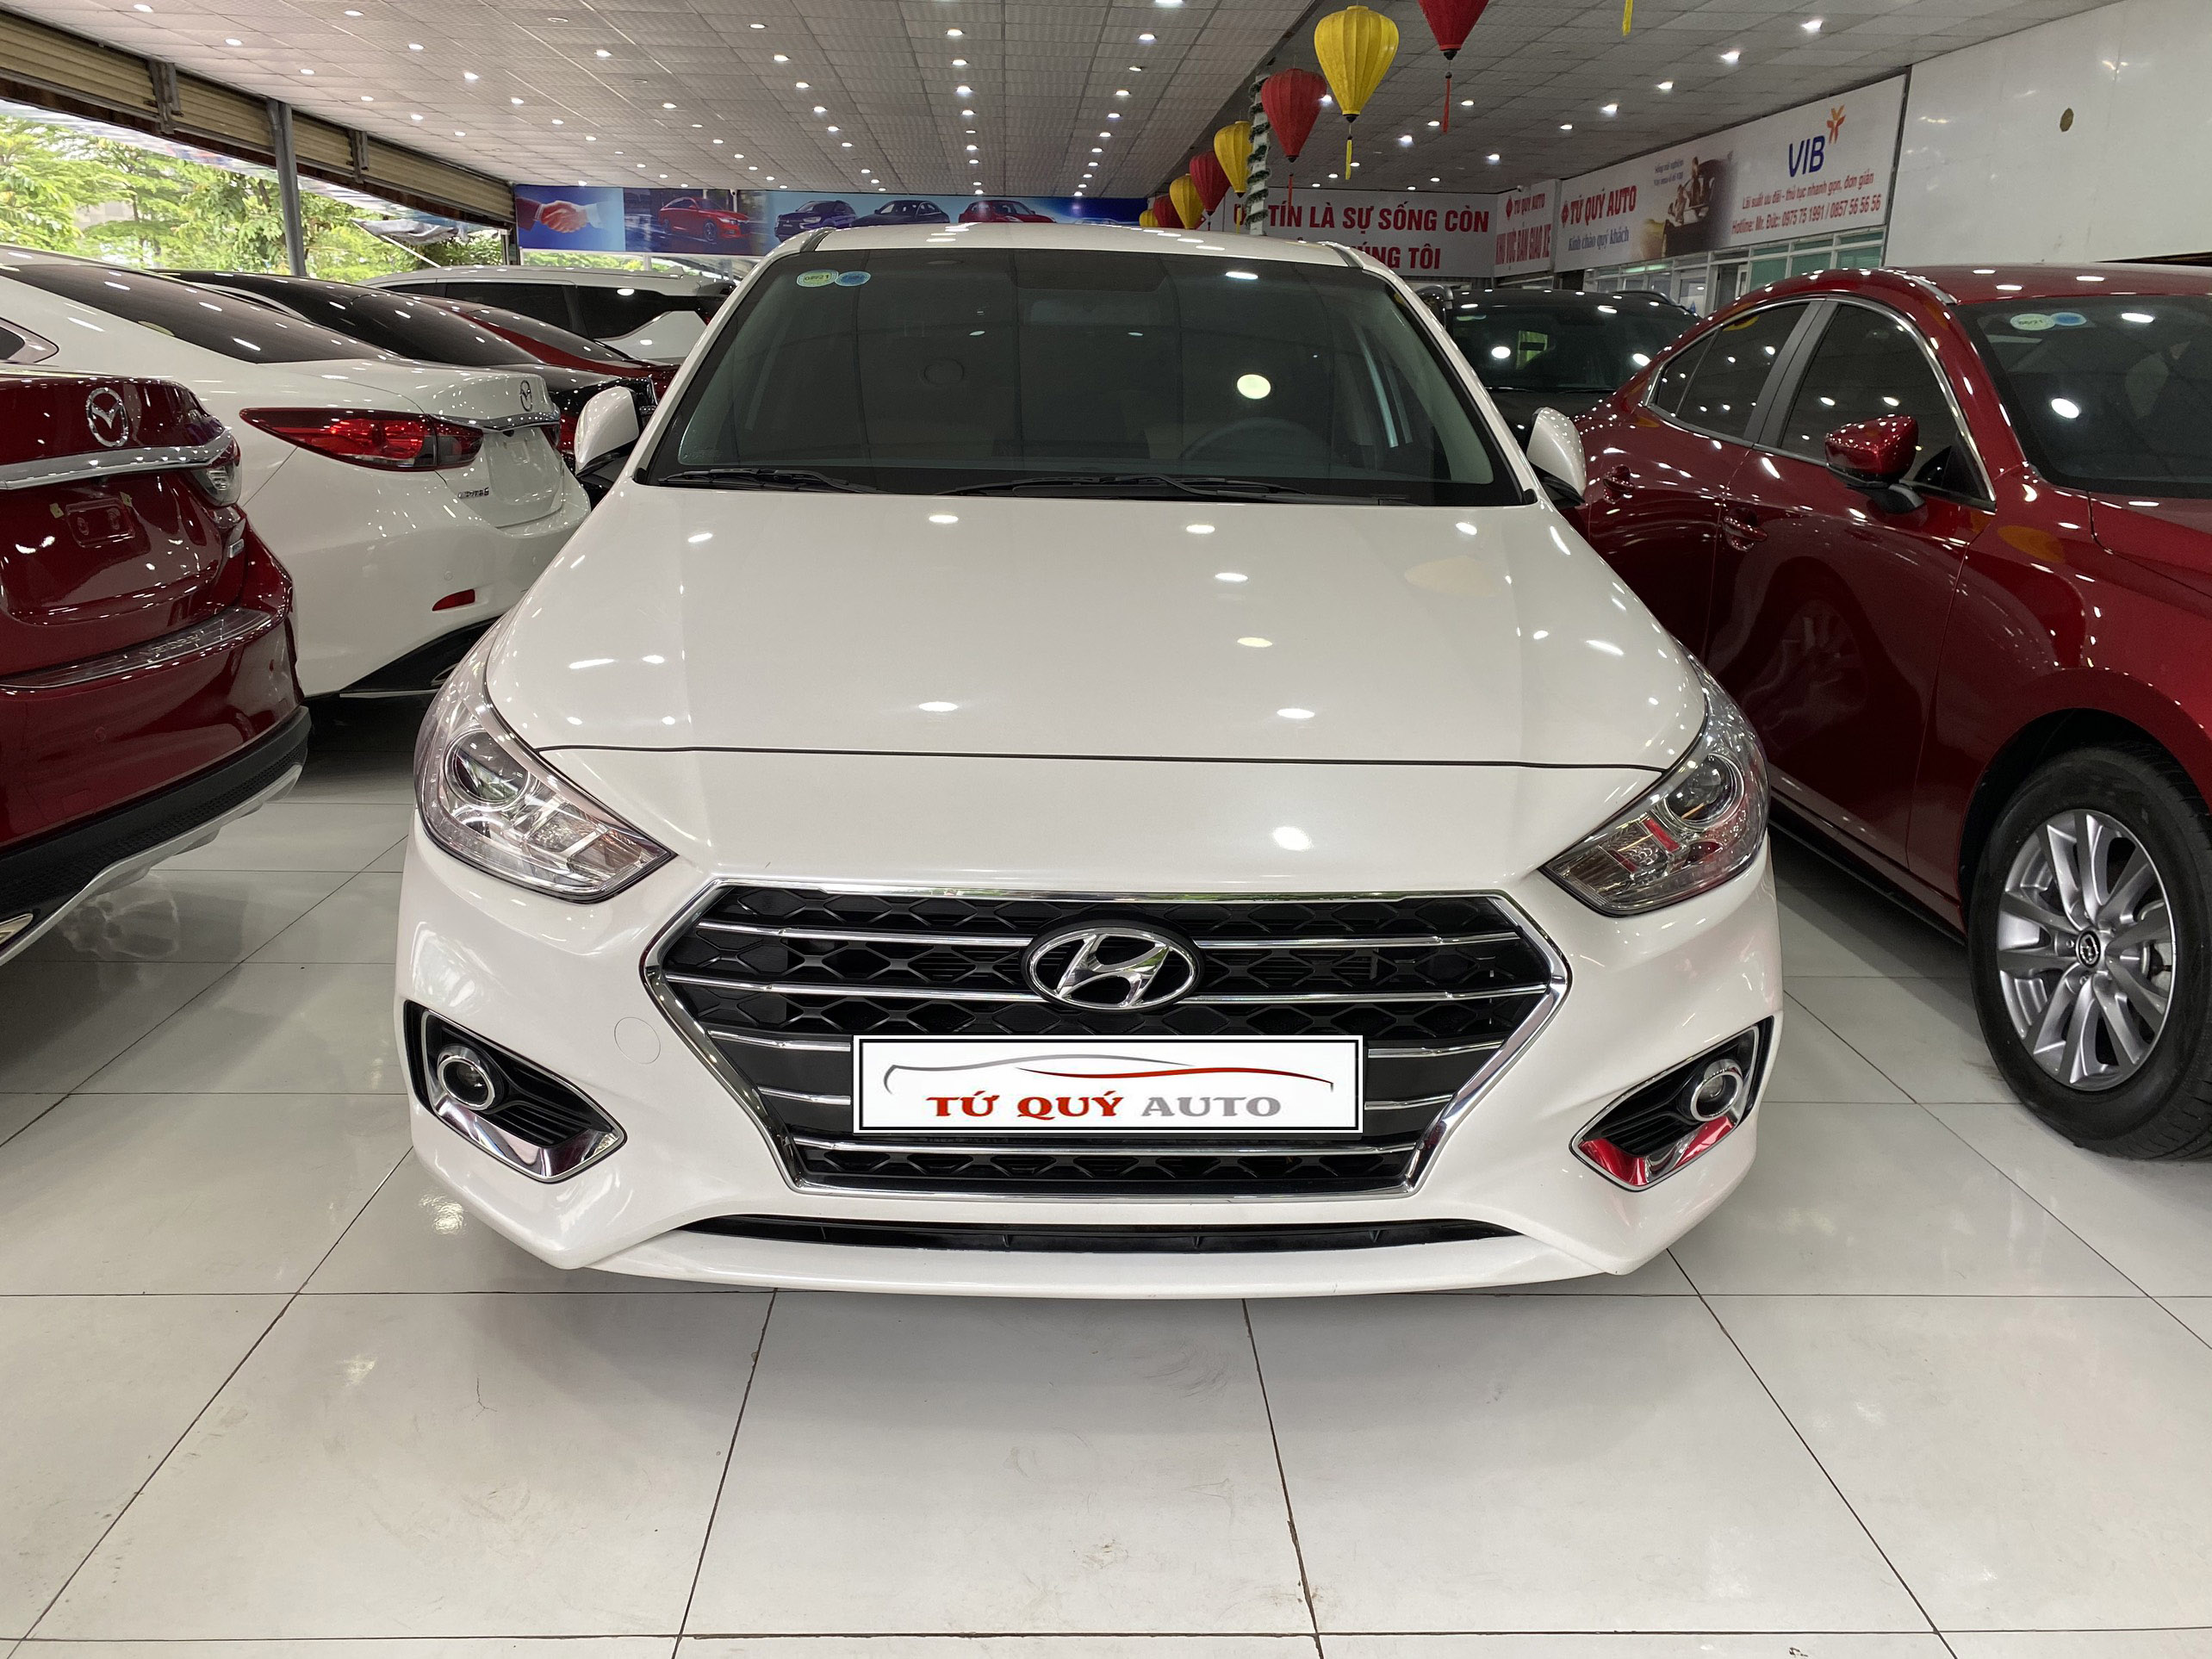 Mua bán xe Hyundai Accent Tiêu chuẩn AT 2019 Màu Đỏ  XC00028678